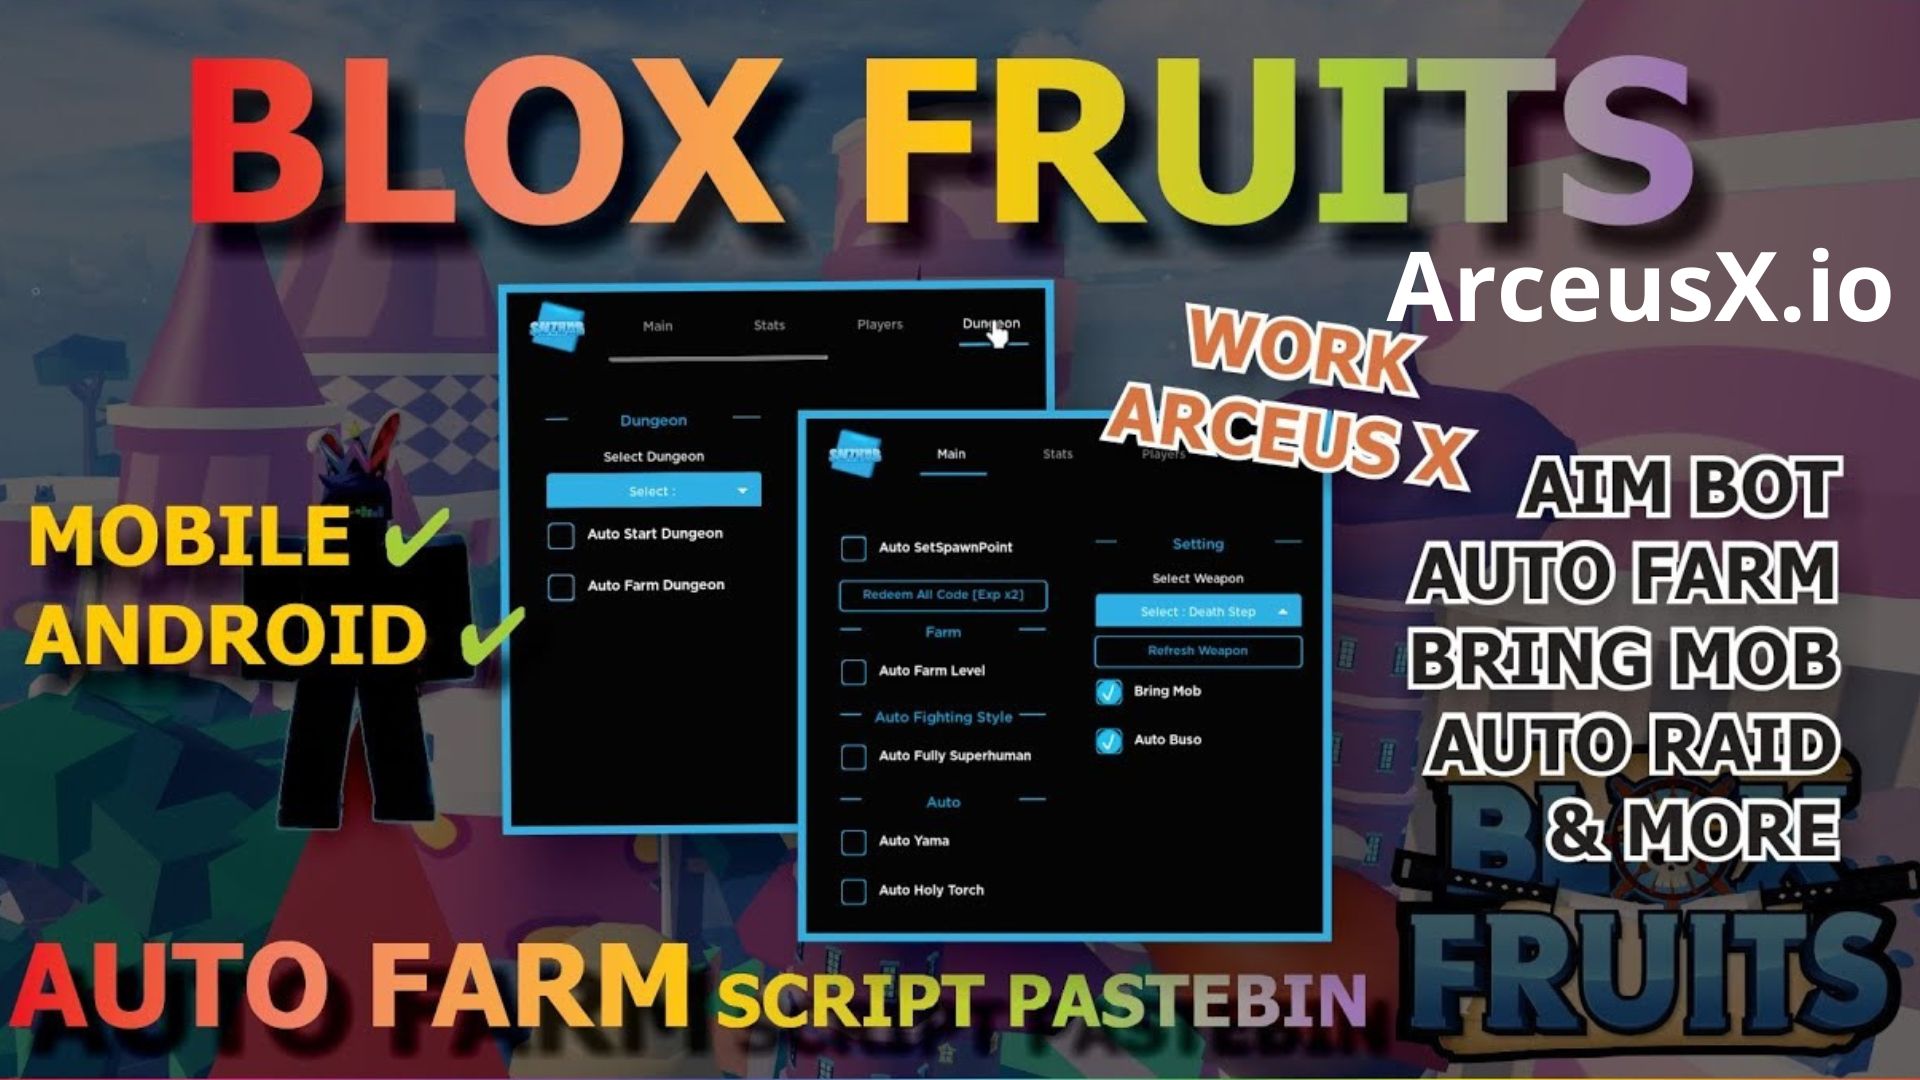 Blox Fruit Arceus X